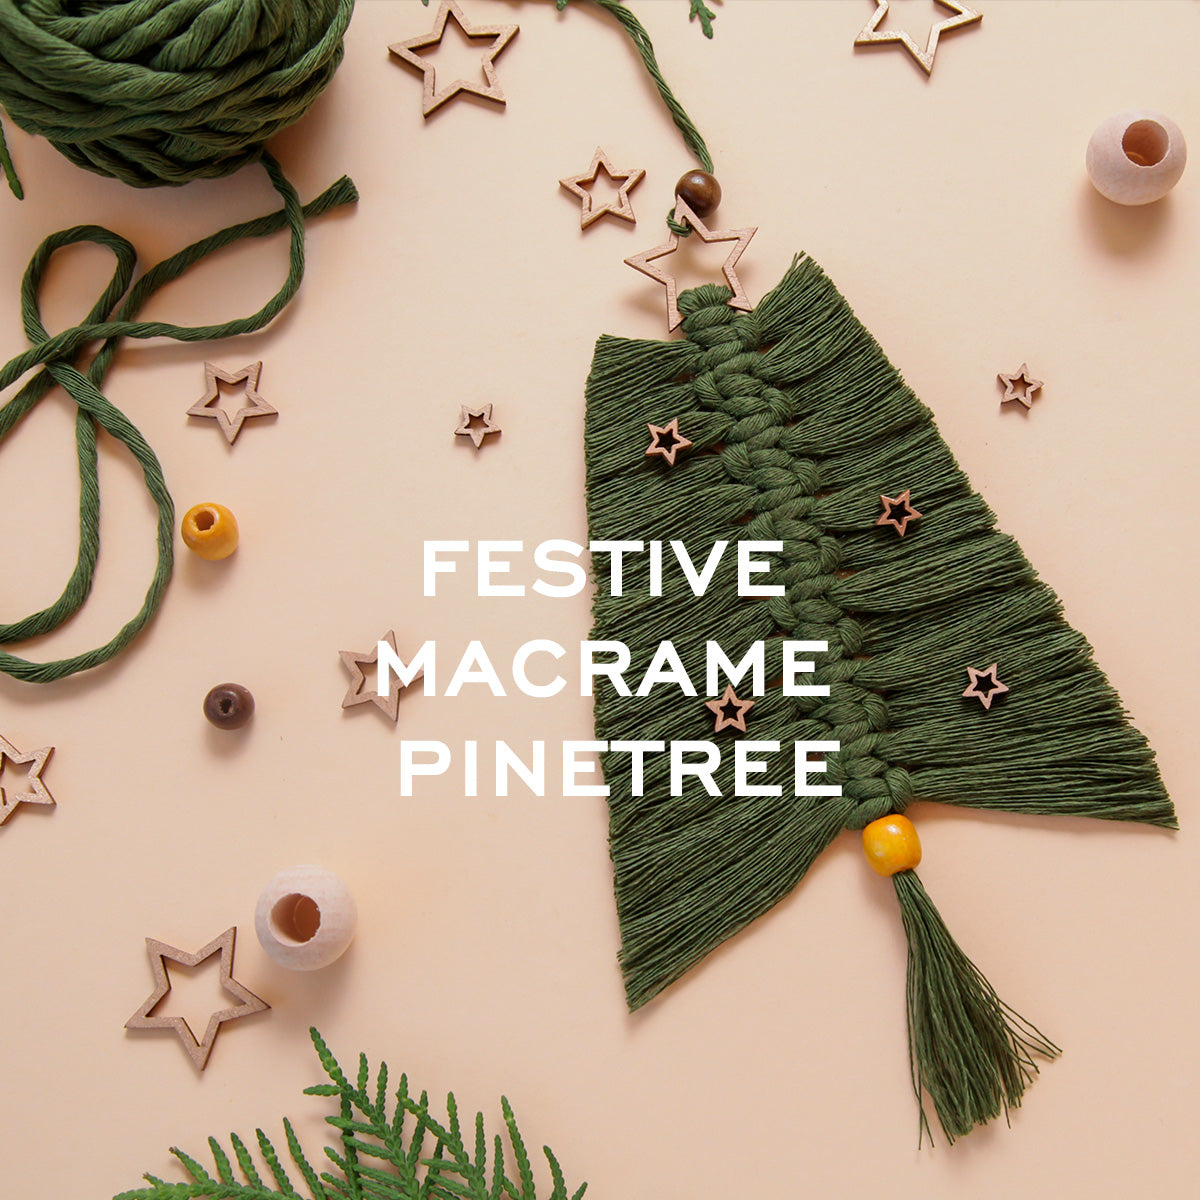 Festive Macrame Pinetree